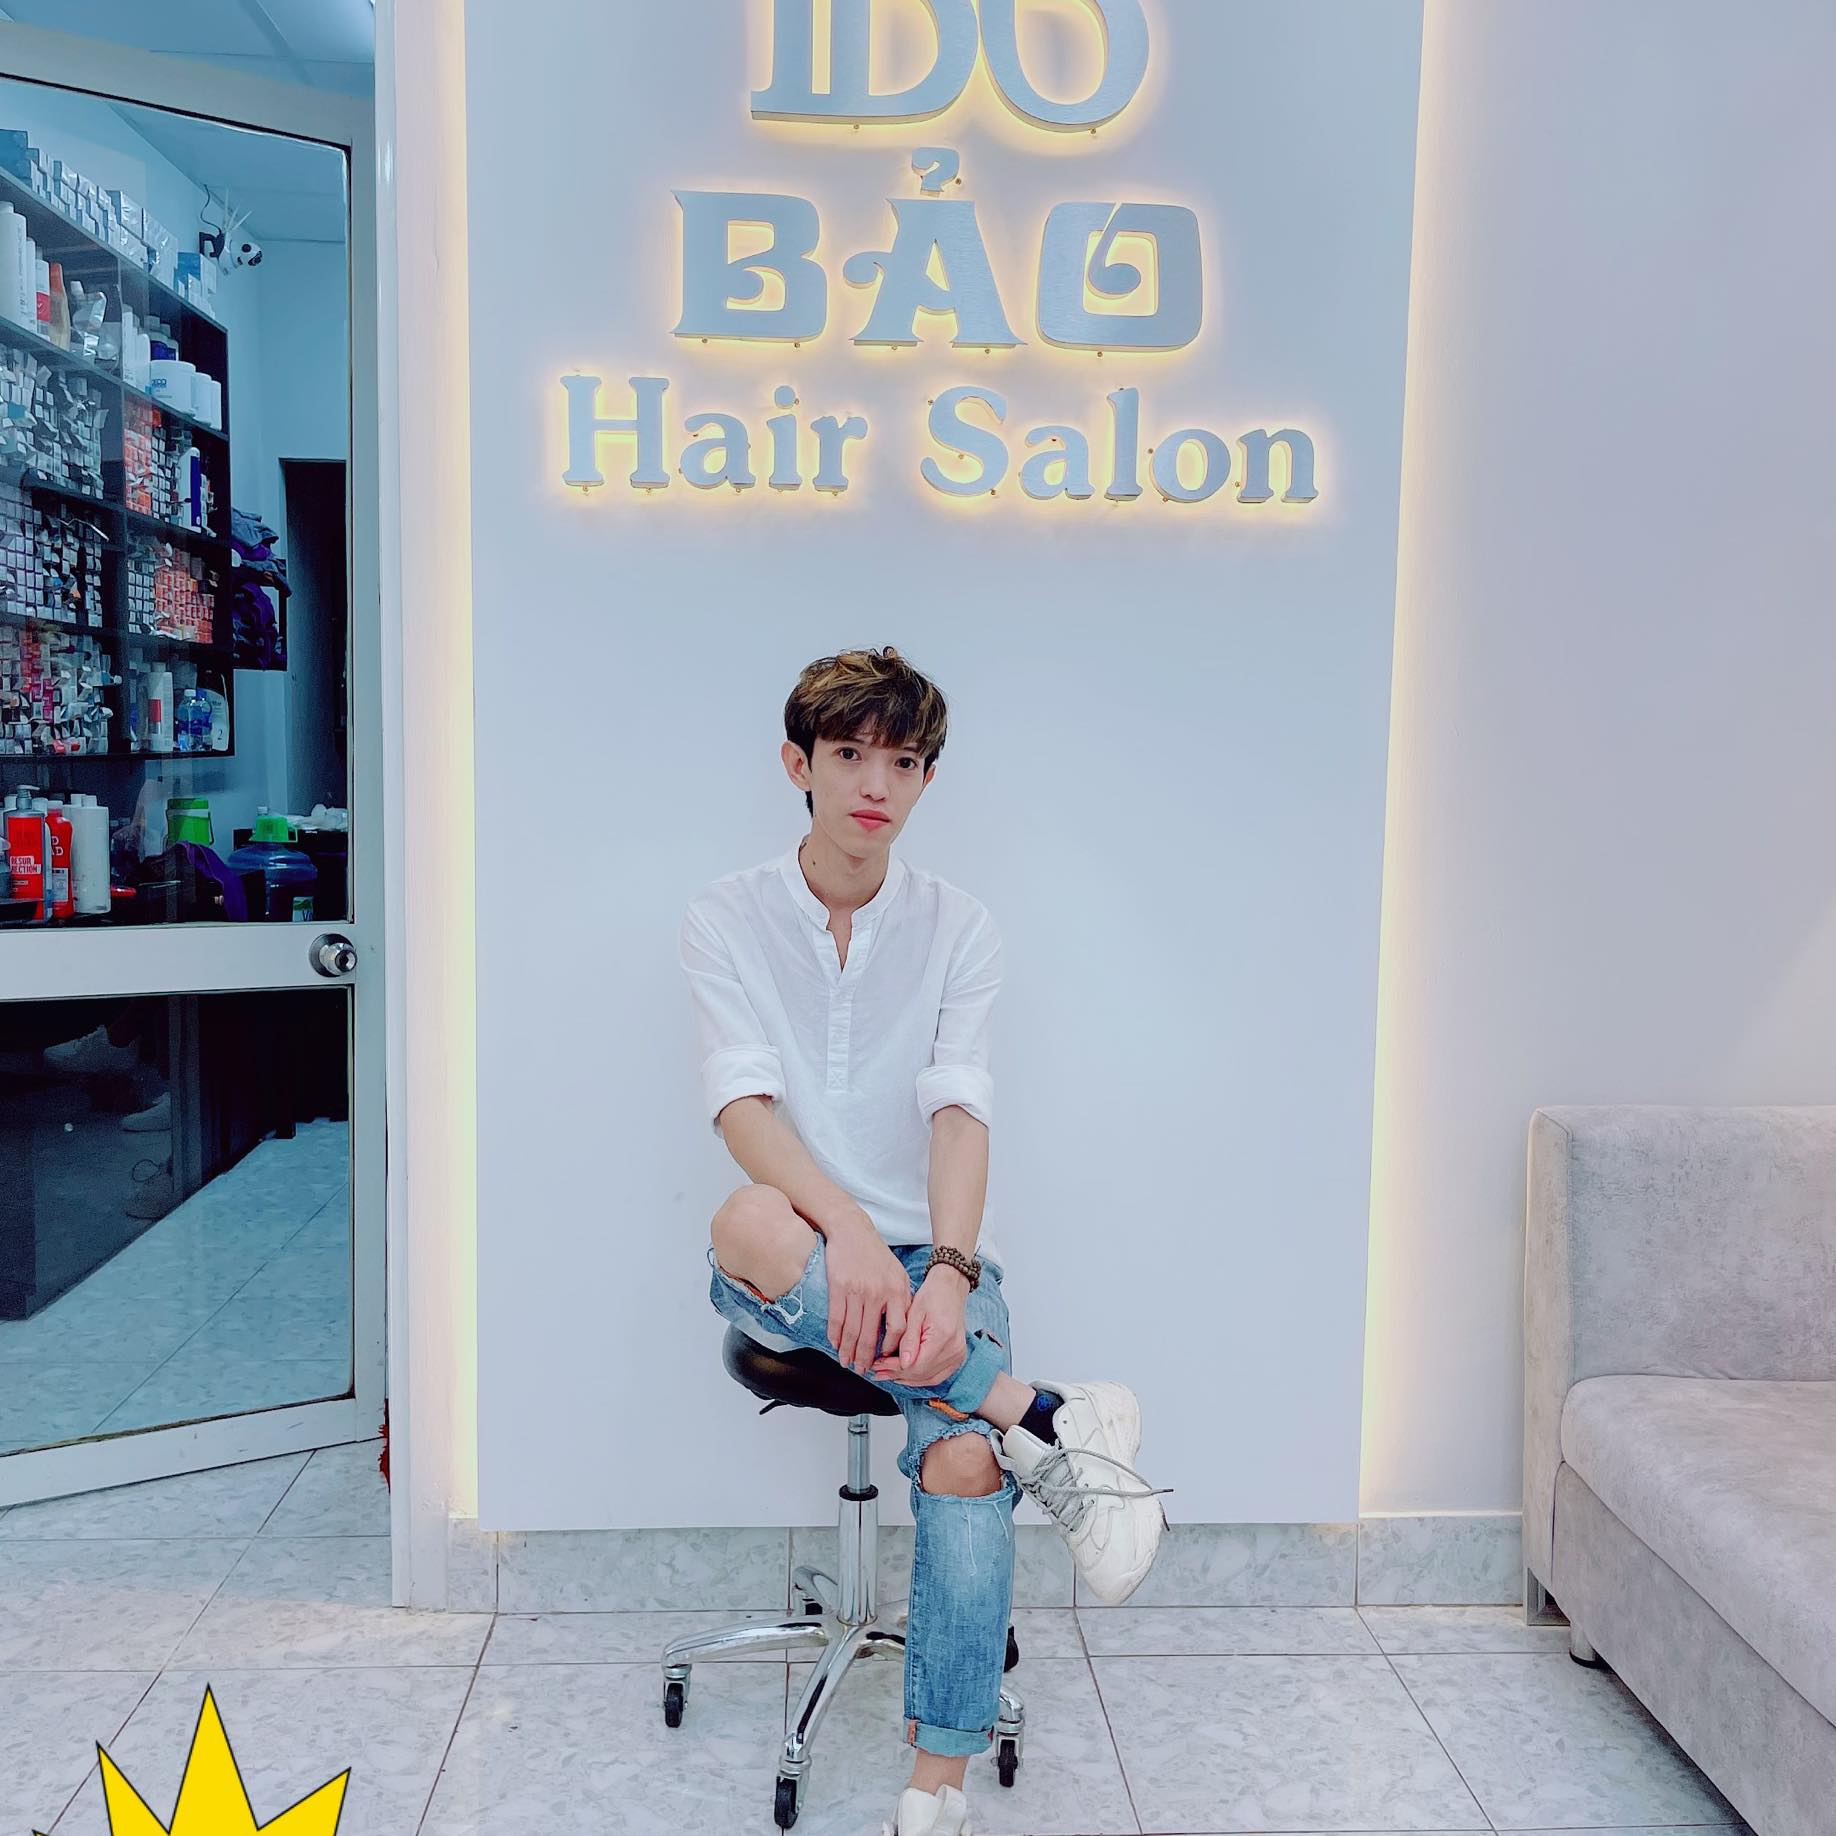 Binh Duong hair salon - Kiệt